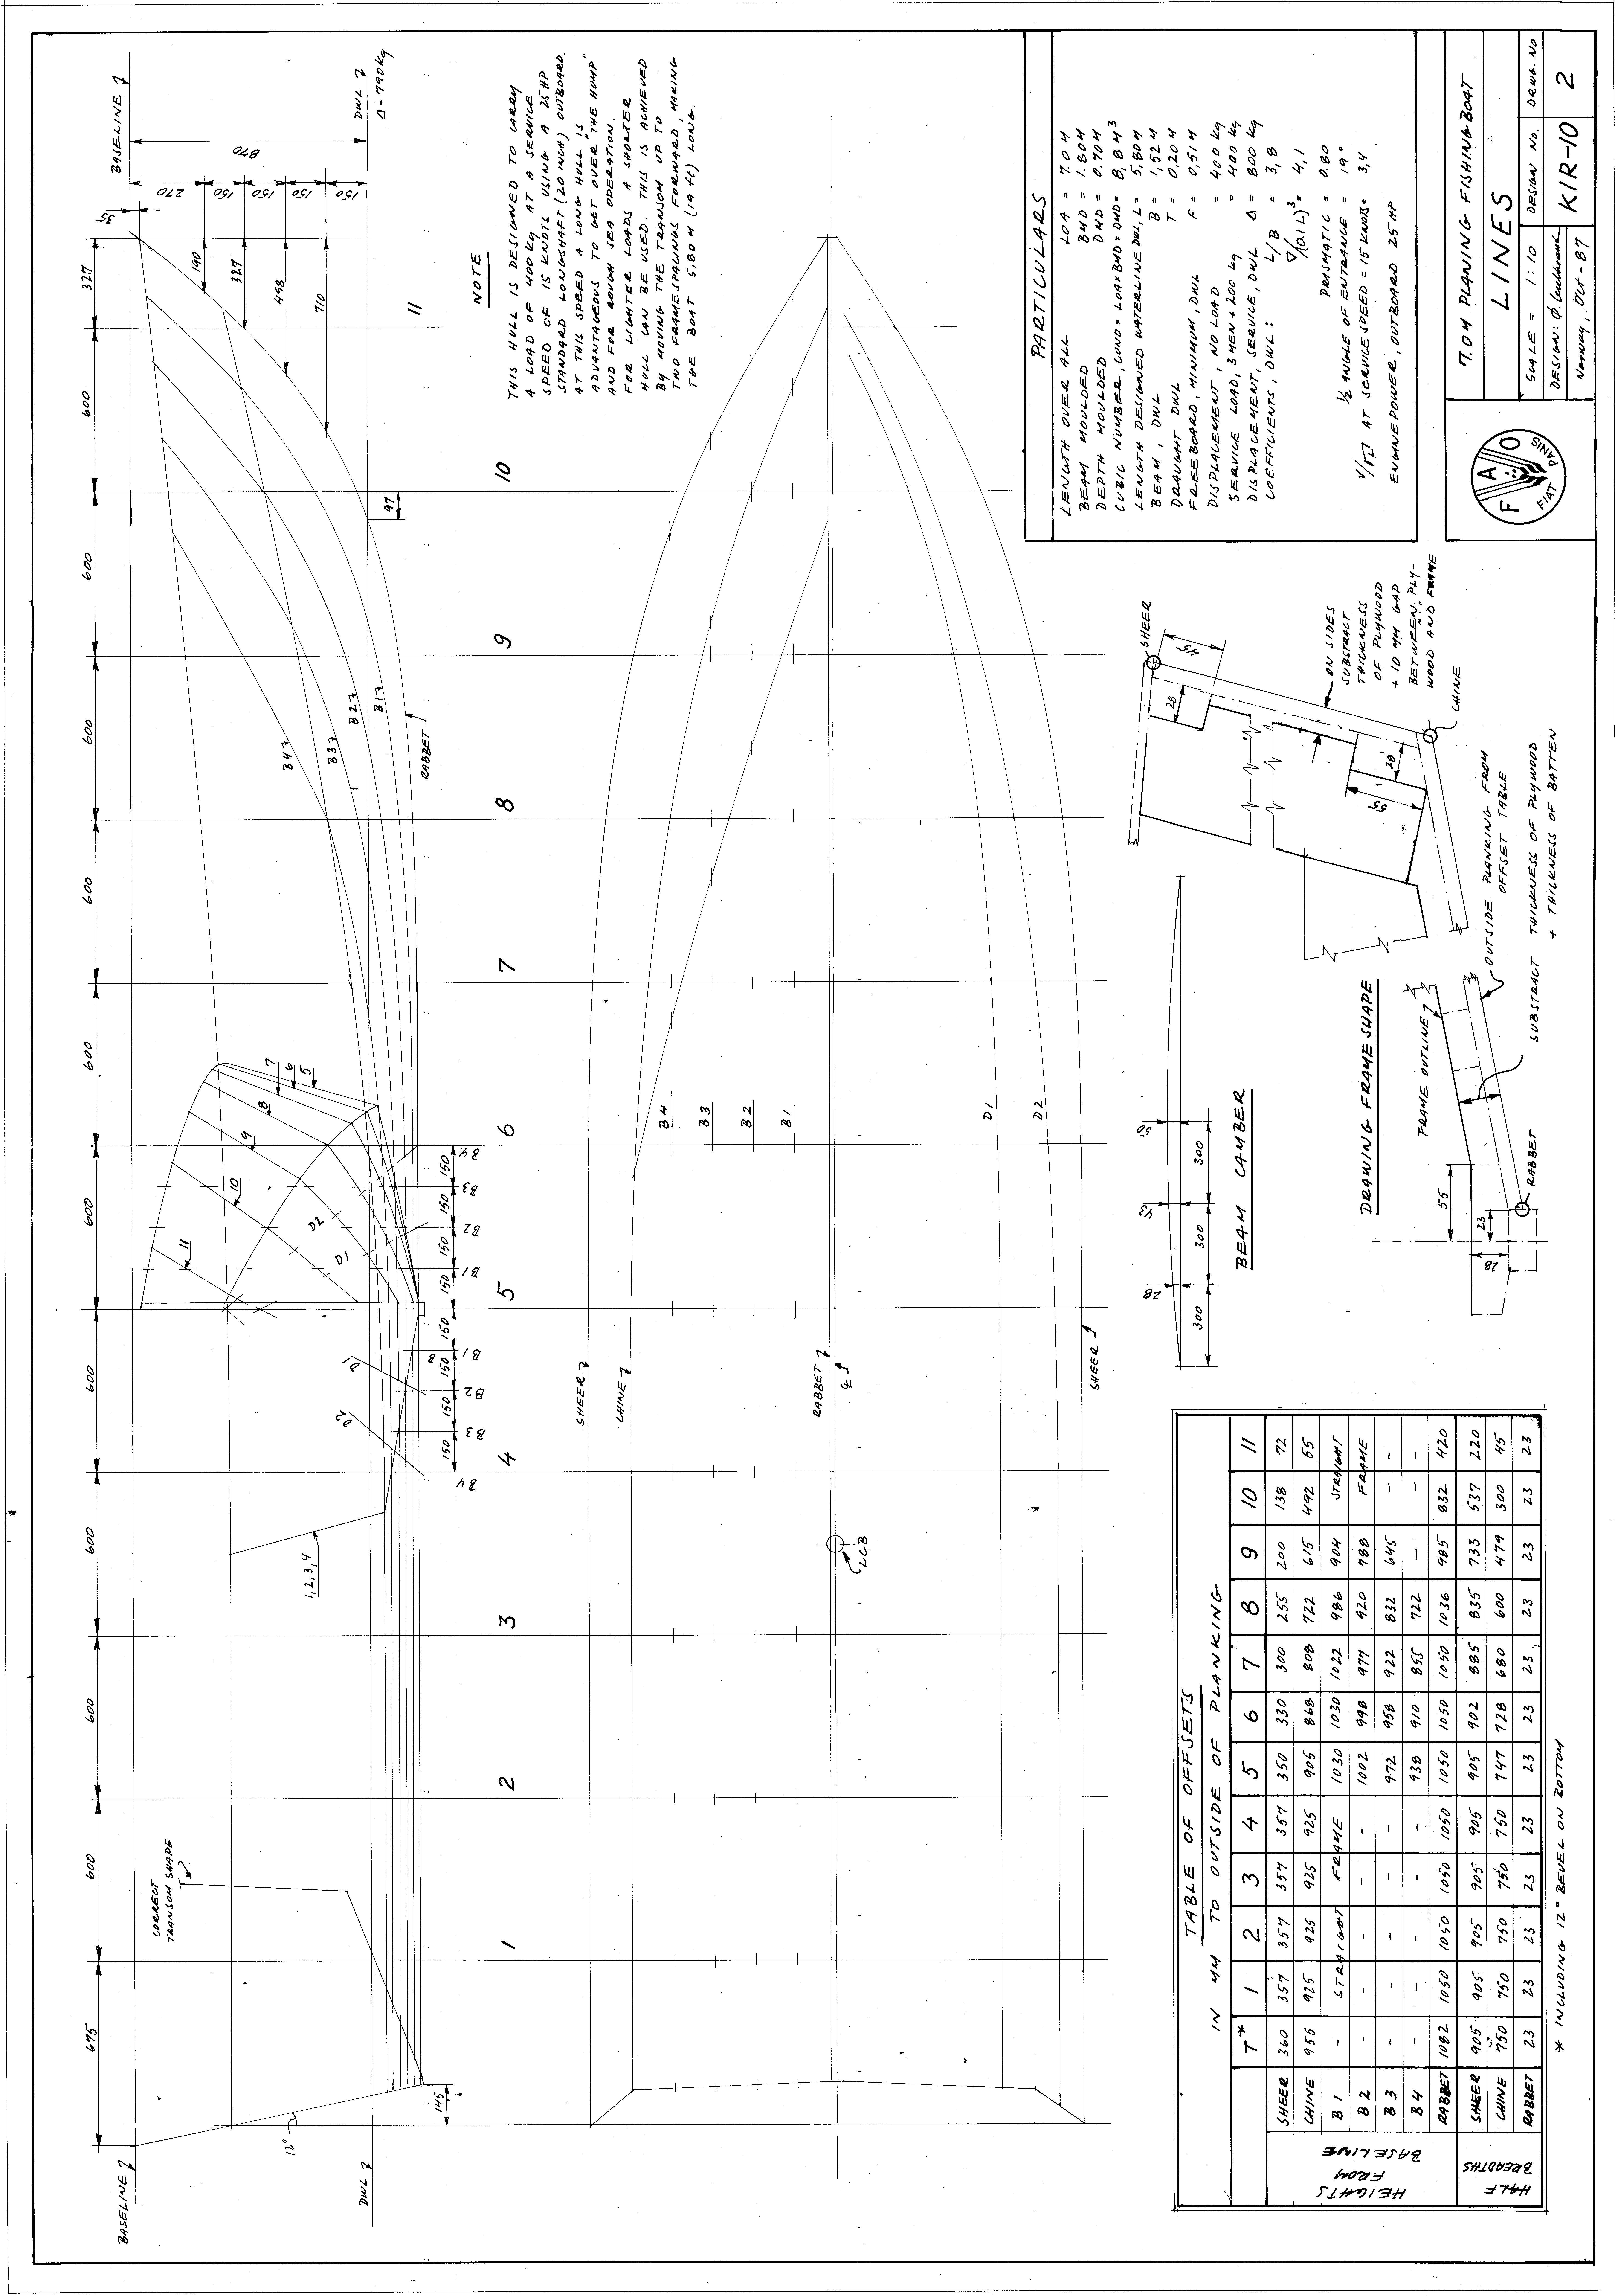 Planning Fishing Boat - 7m - Fishing Vessel Design Database (FVDD)